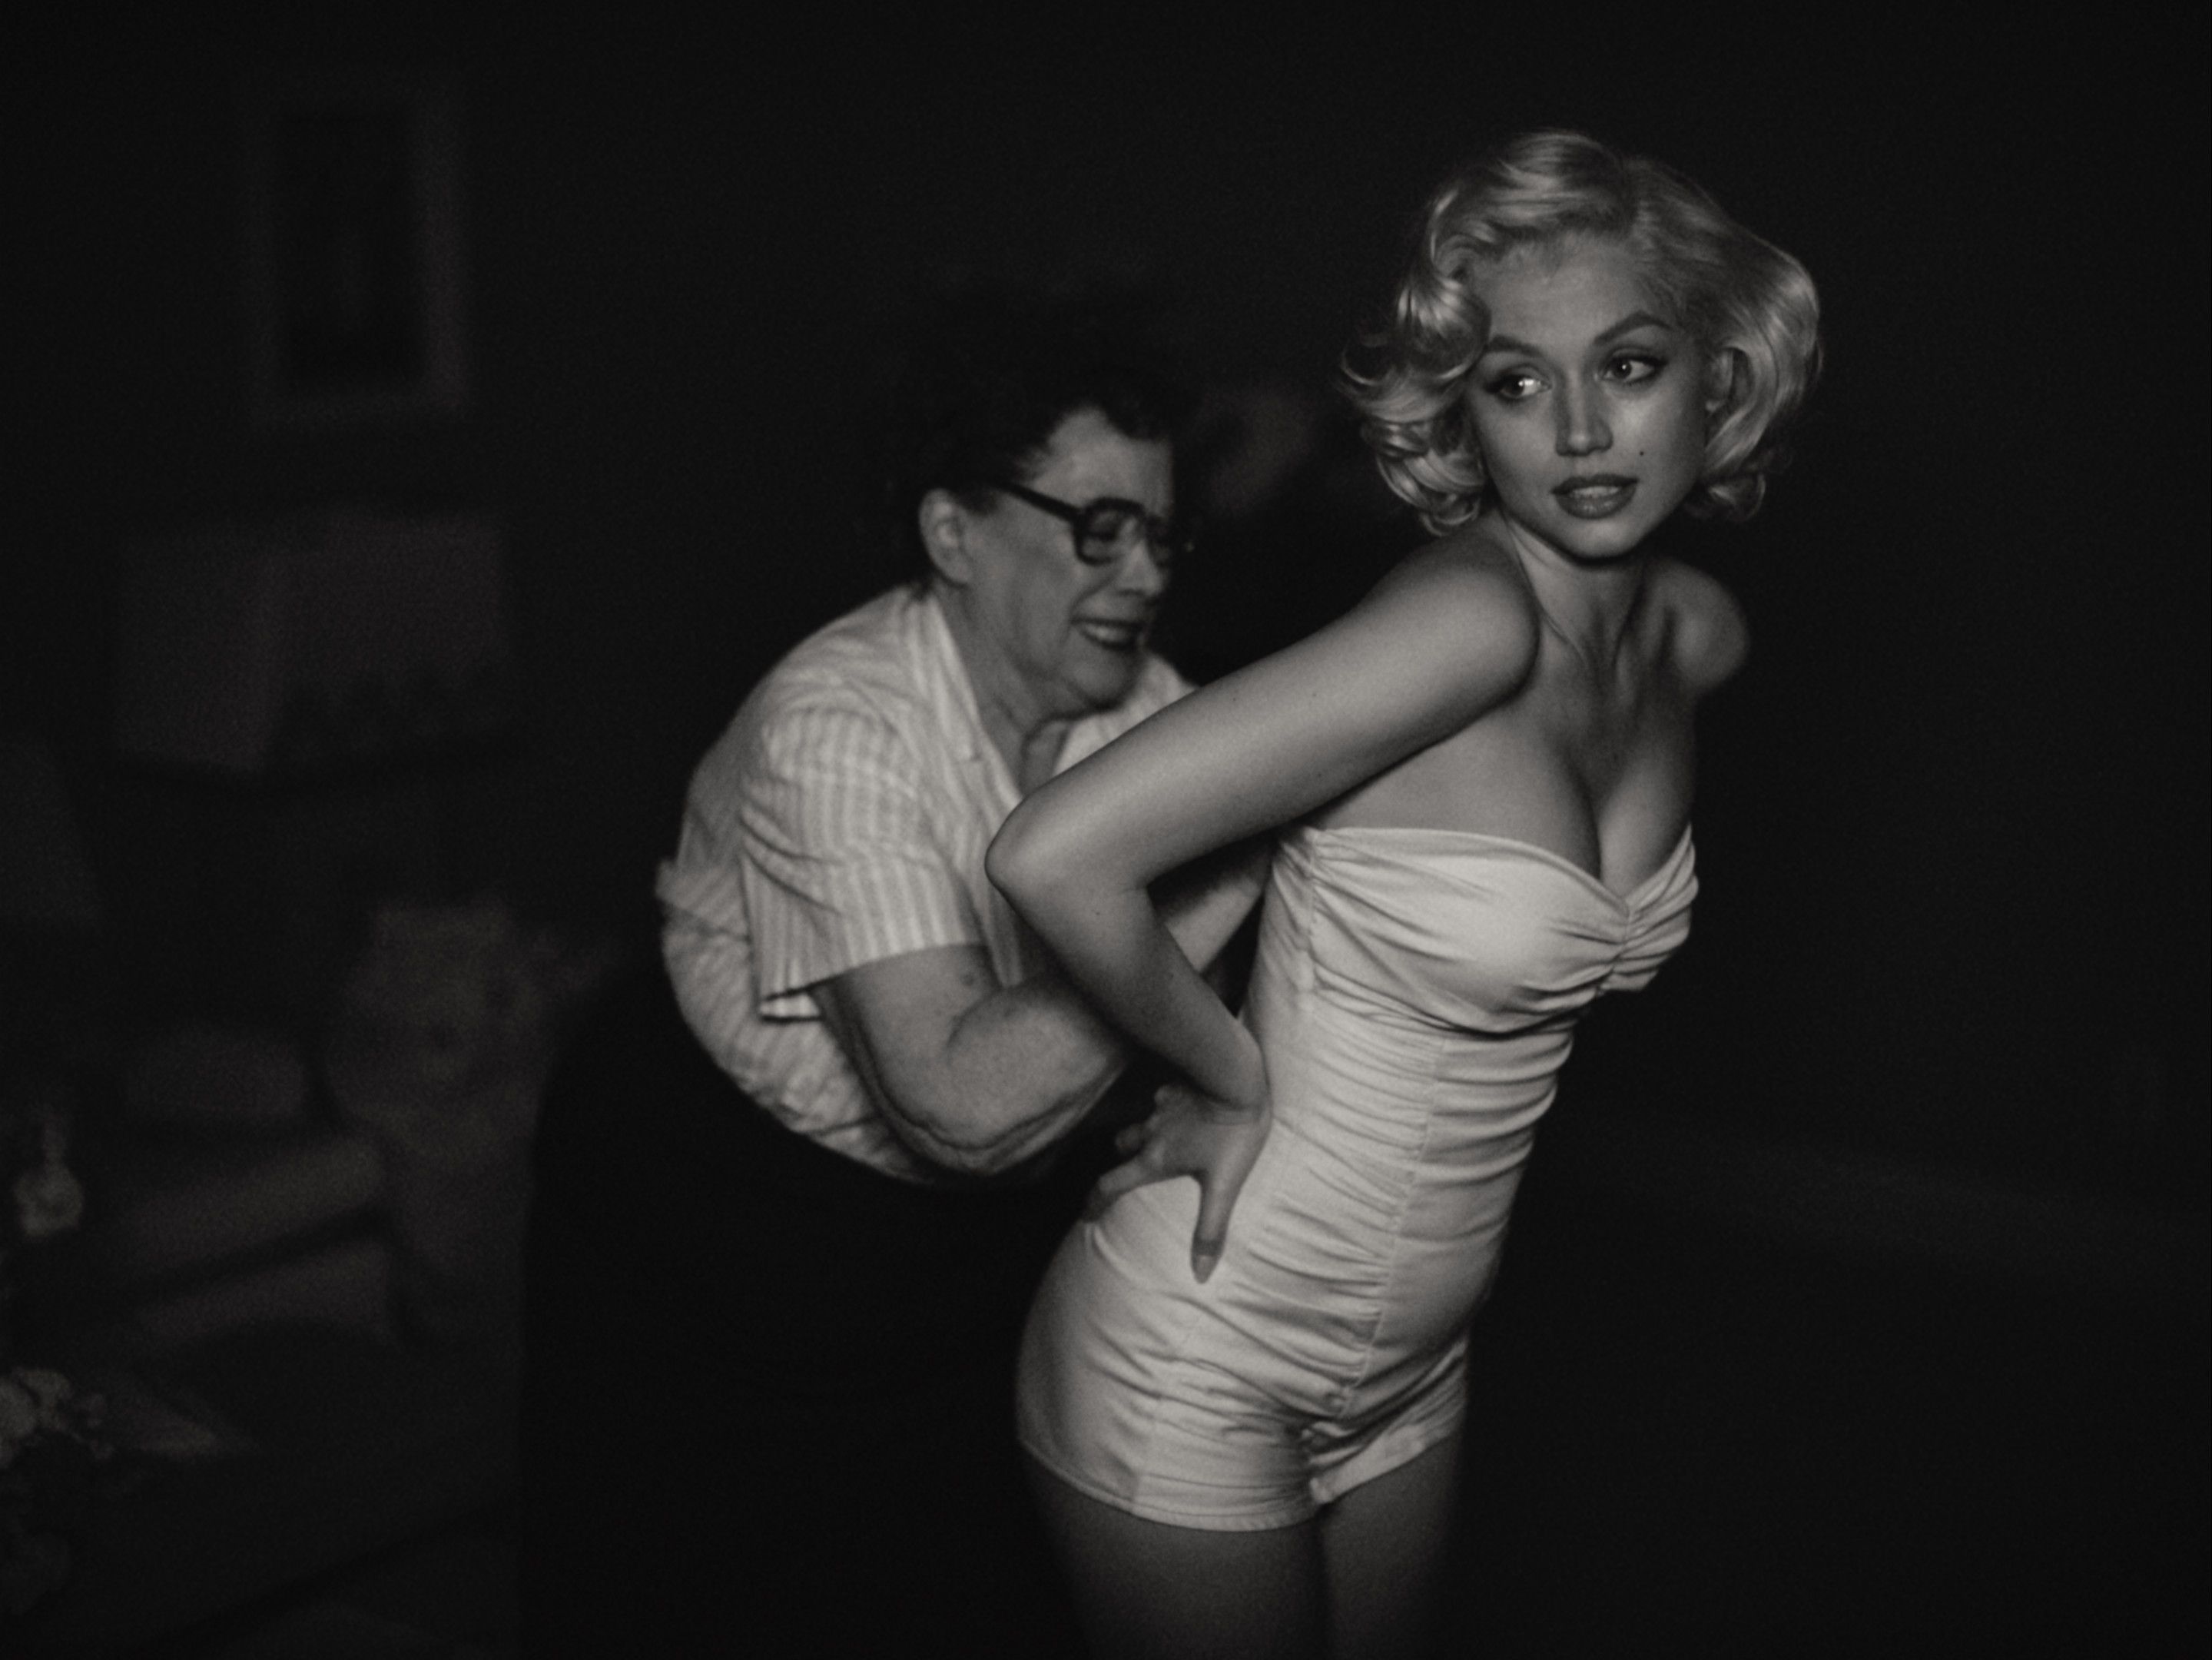 Netflix's Marilyn Monroe Film, 'Blonde' - Release Date, Cast, Spoilers